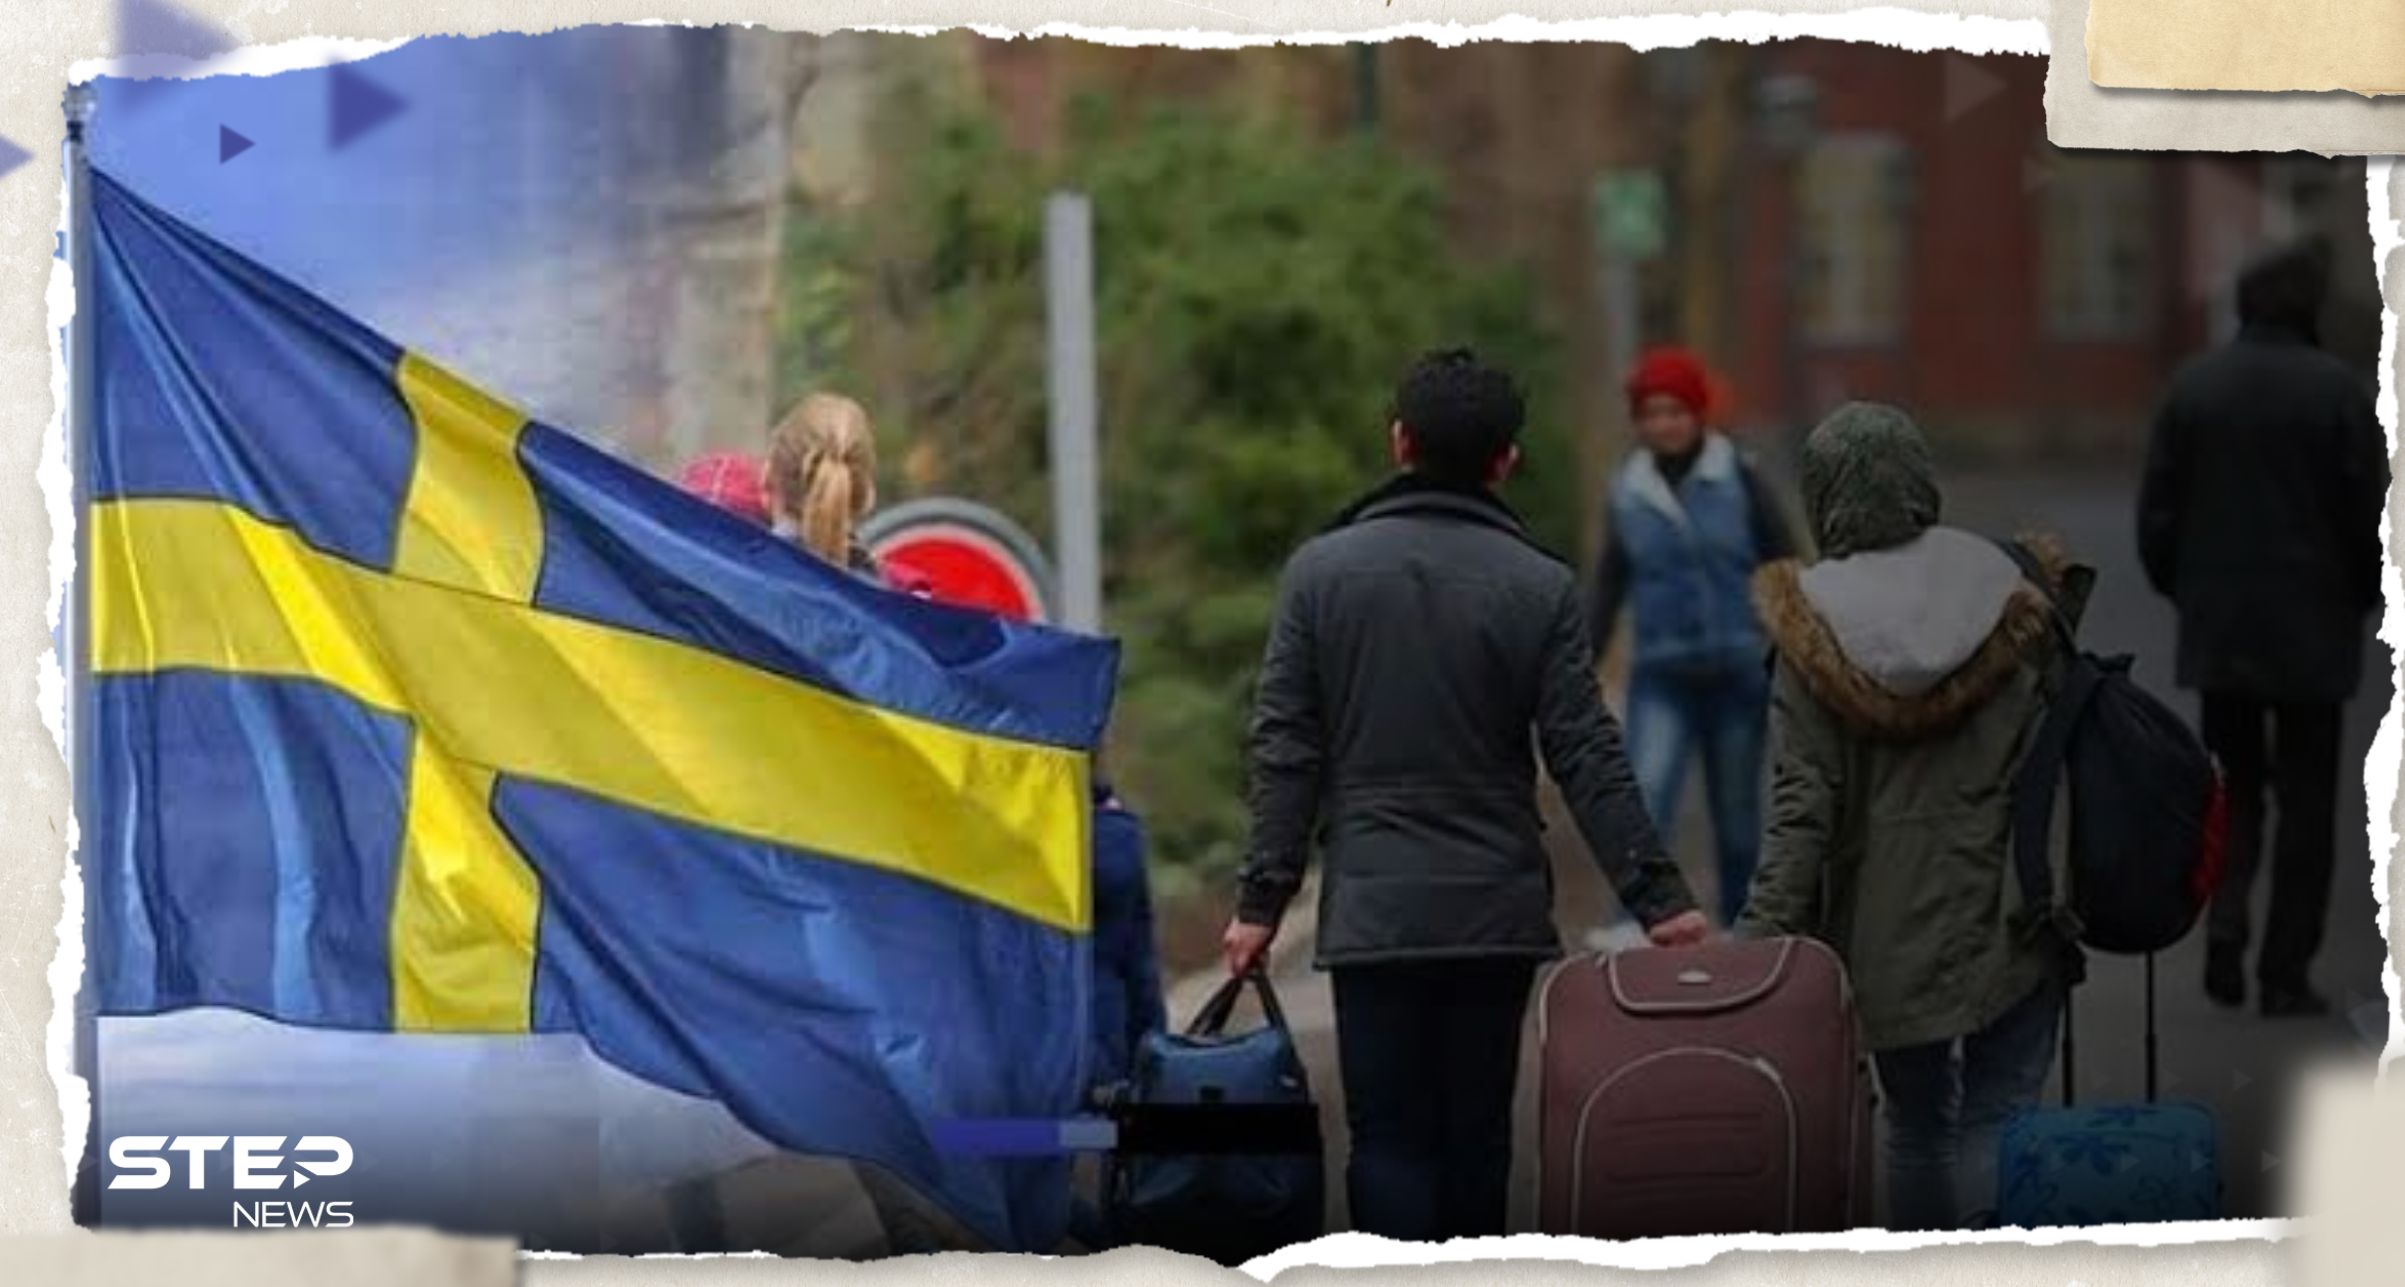 السويد تحد من المزايا الاجتماعية للمهاجرين غير الأوروبيين